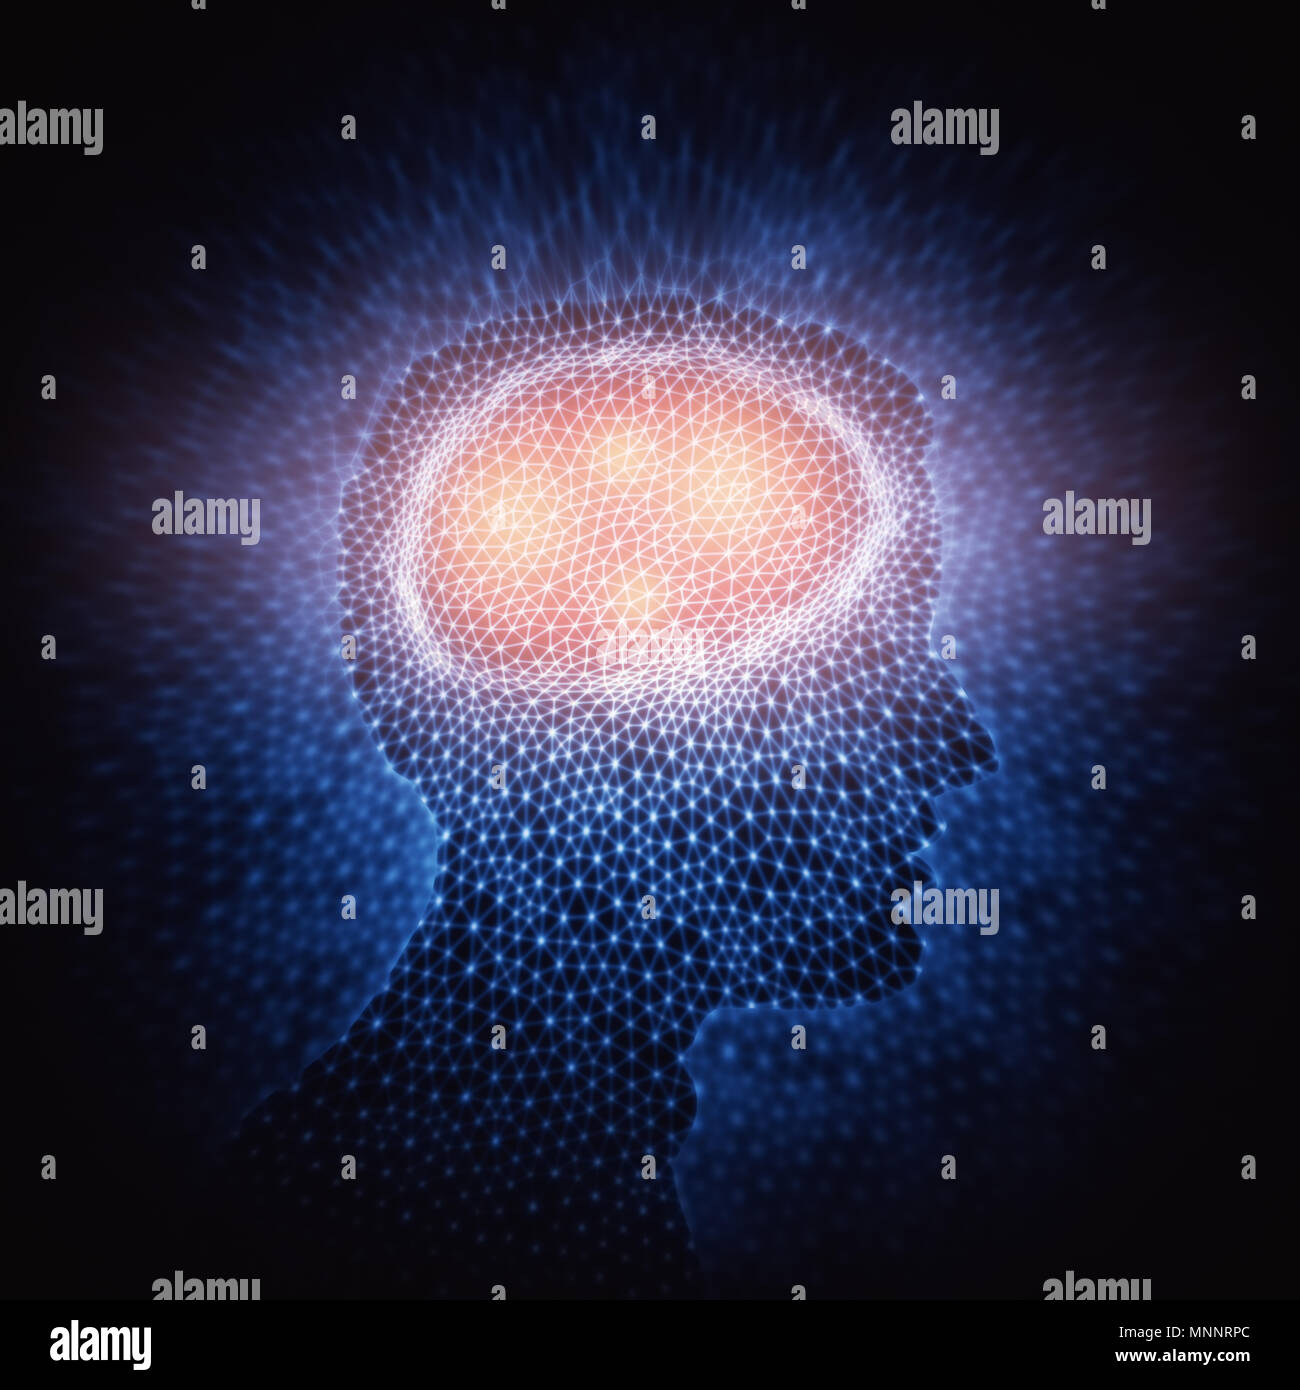 3D'illustrazione. Cervello umano in una struttura di connessioni poligonale che rappresenta la potenza della mente. Foto Stock